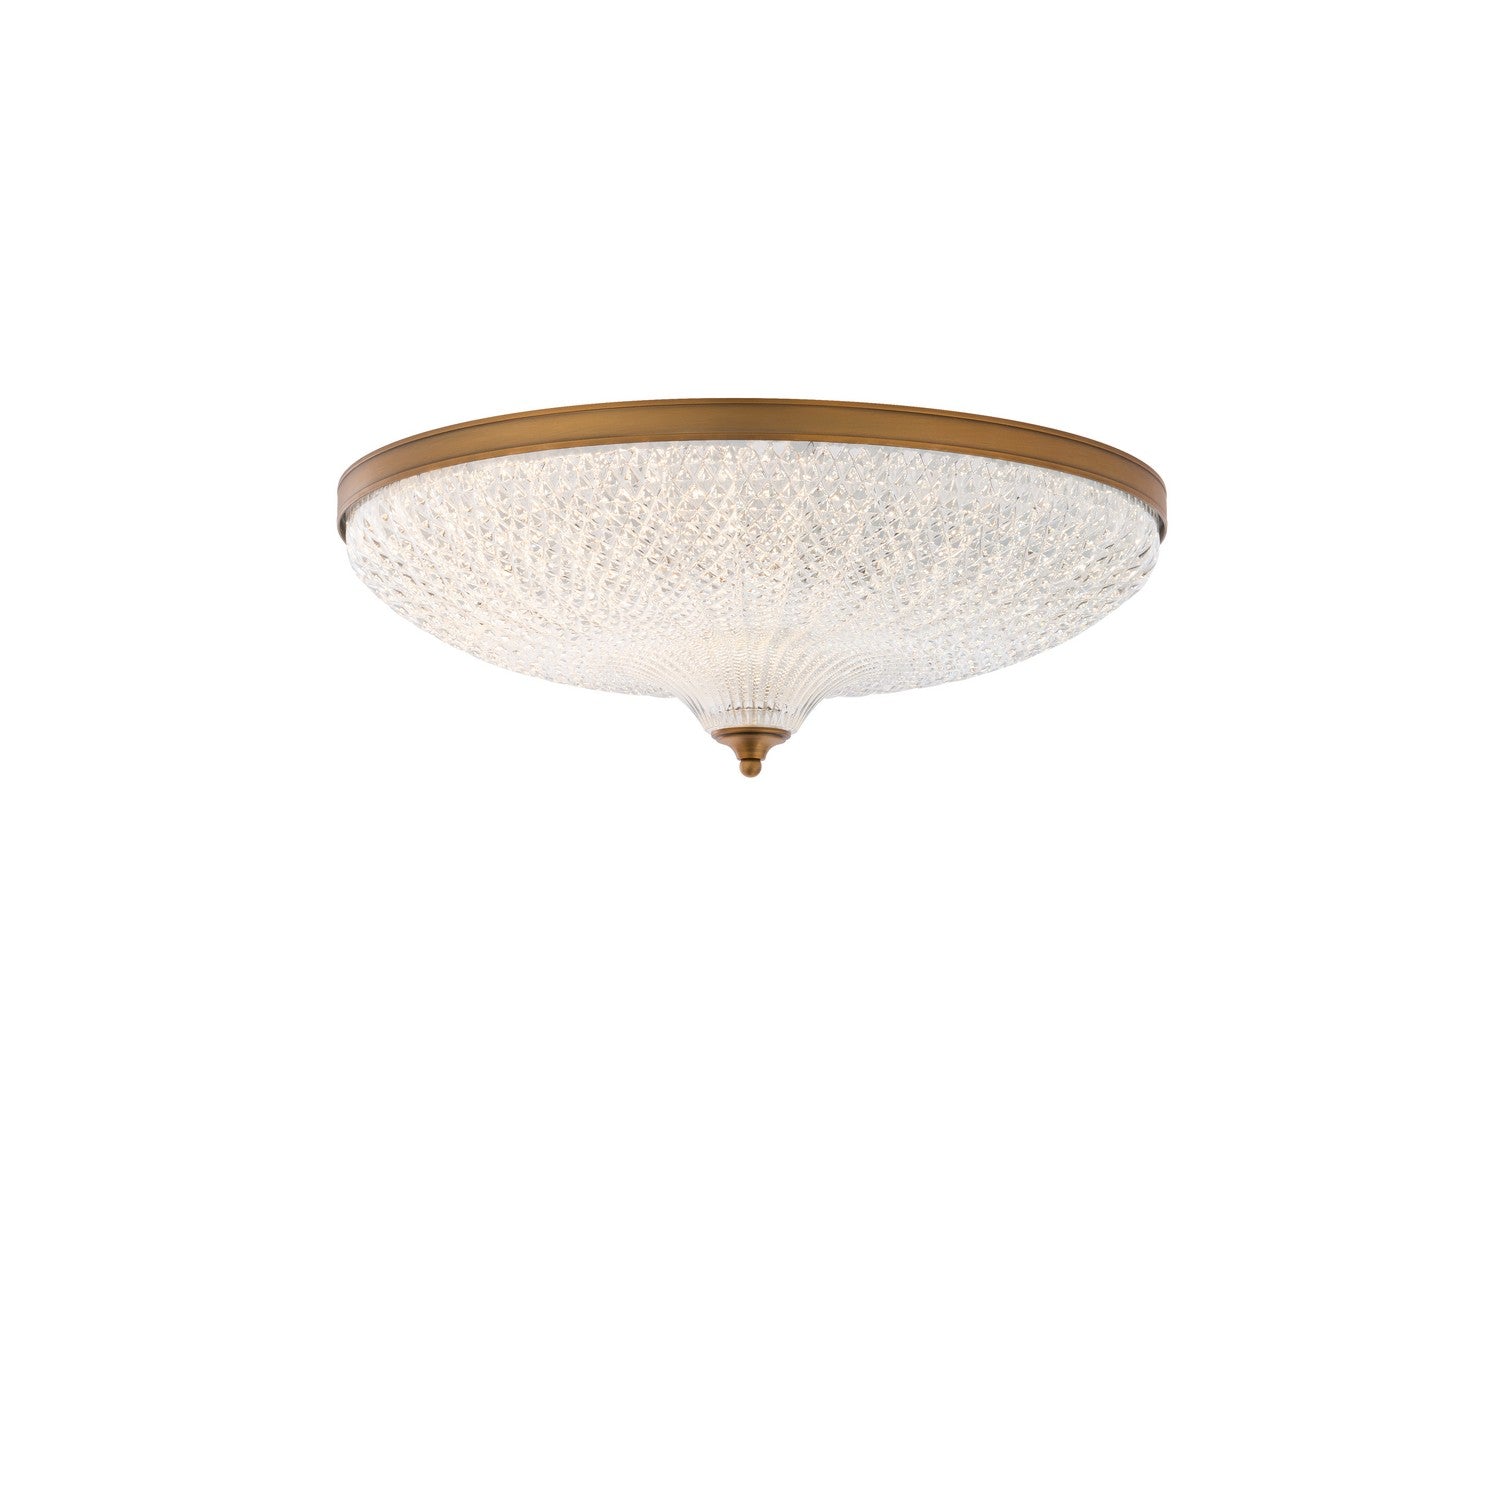 Schonbek - LED Flush Mount - Roma - Aged Brass- Union Lighting Luminaires Decor